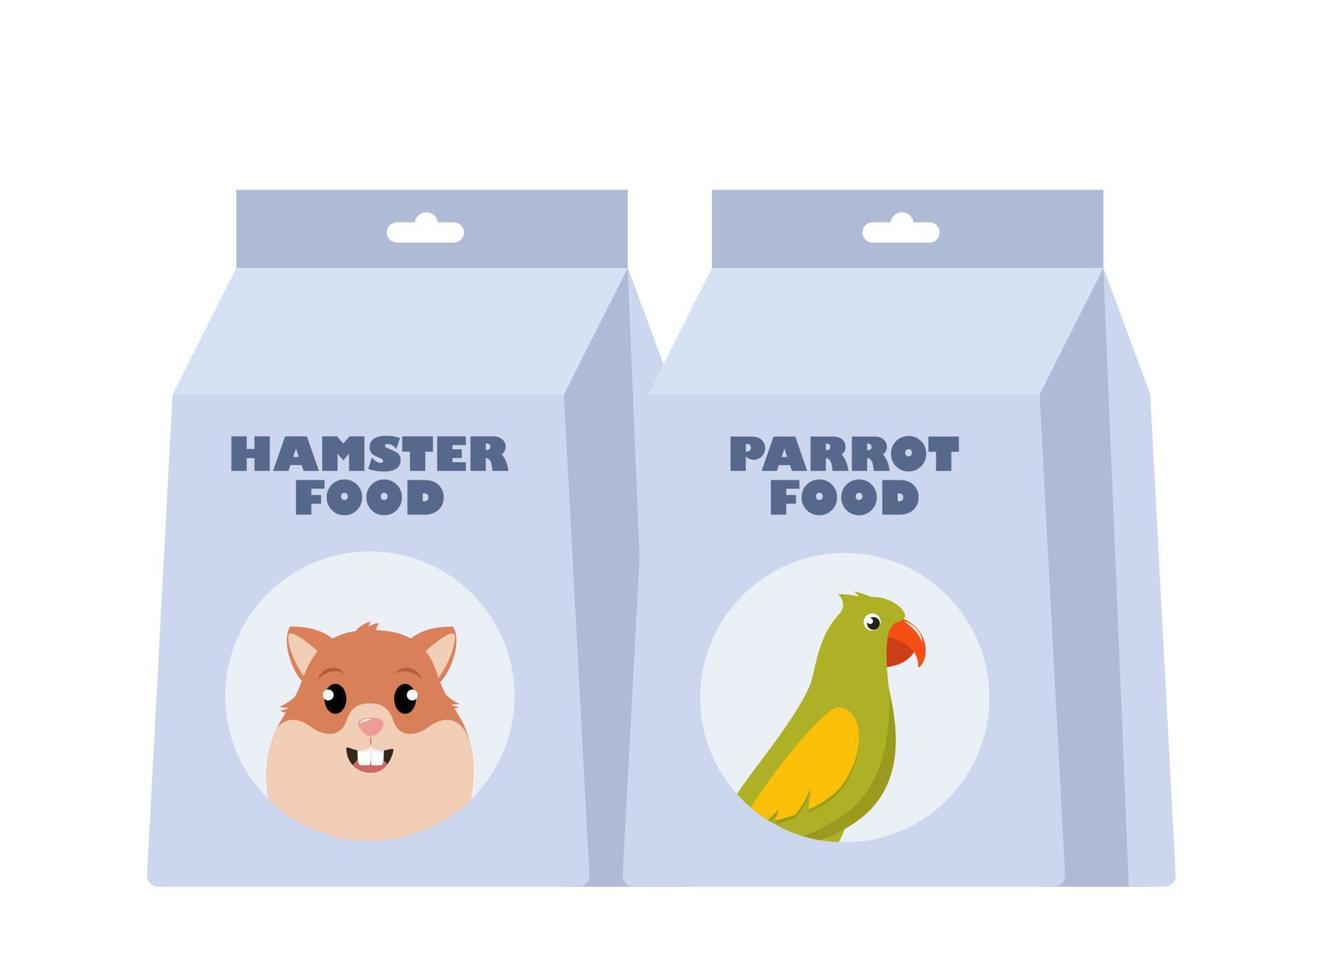 Papagei Essen und Hamster Essen Pack. Pakete von trocken Lebensmittel. Haustier Geschäft, inländisch Tier, Pflege Konzept. Vektor Illustration.